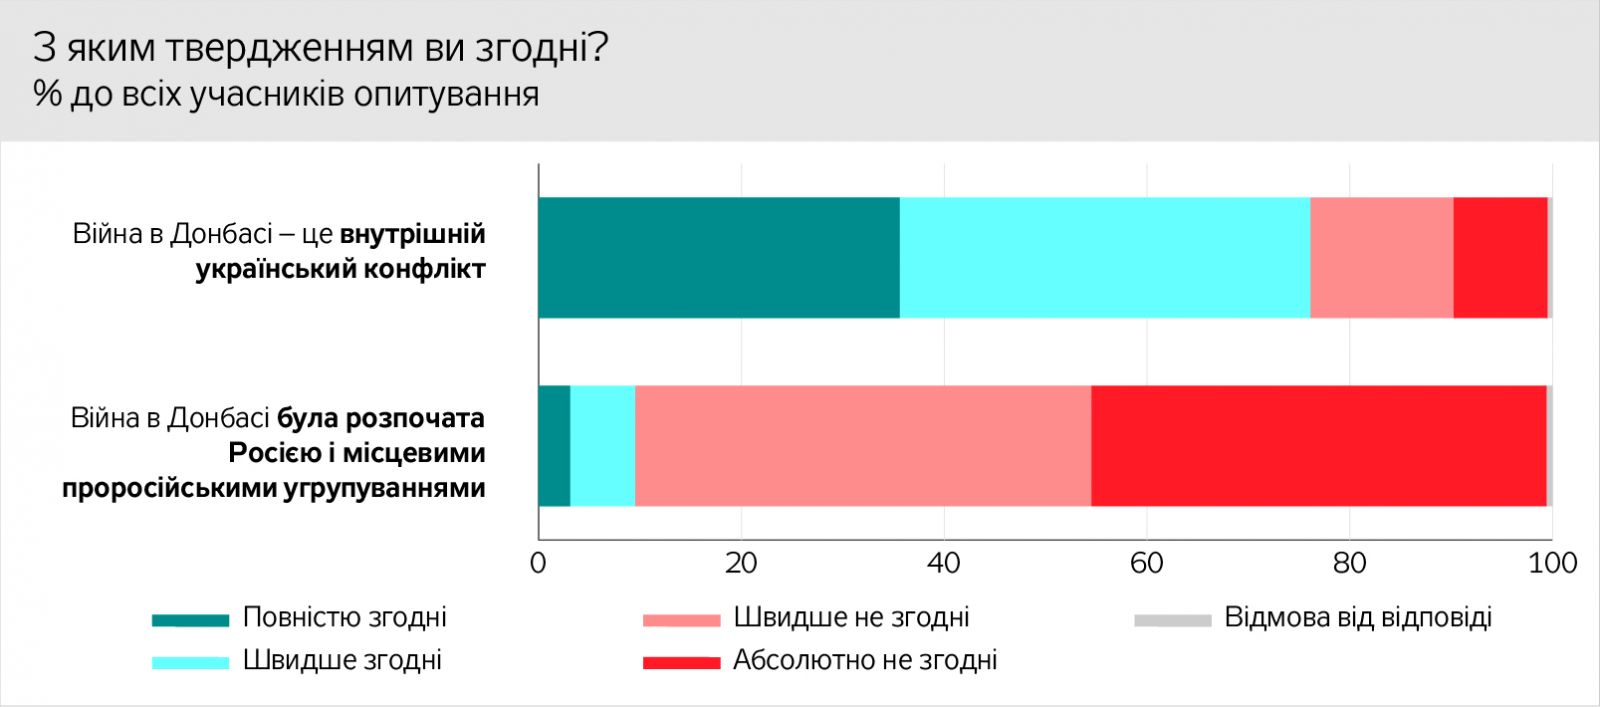 Реинтеграция Донбасса: большинство жителей ОРДЛО считают войну внутренним конфликтом, но 58% называют себя гражданами Украины, фото — ЗН